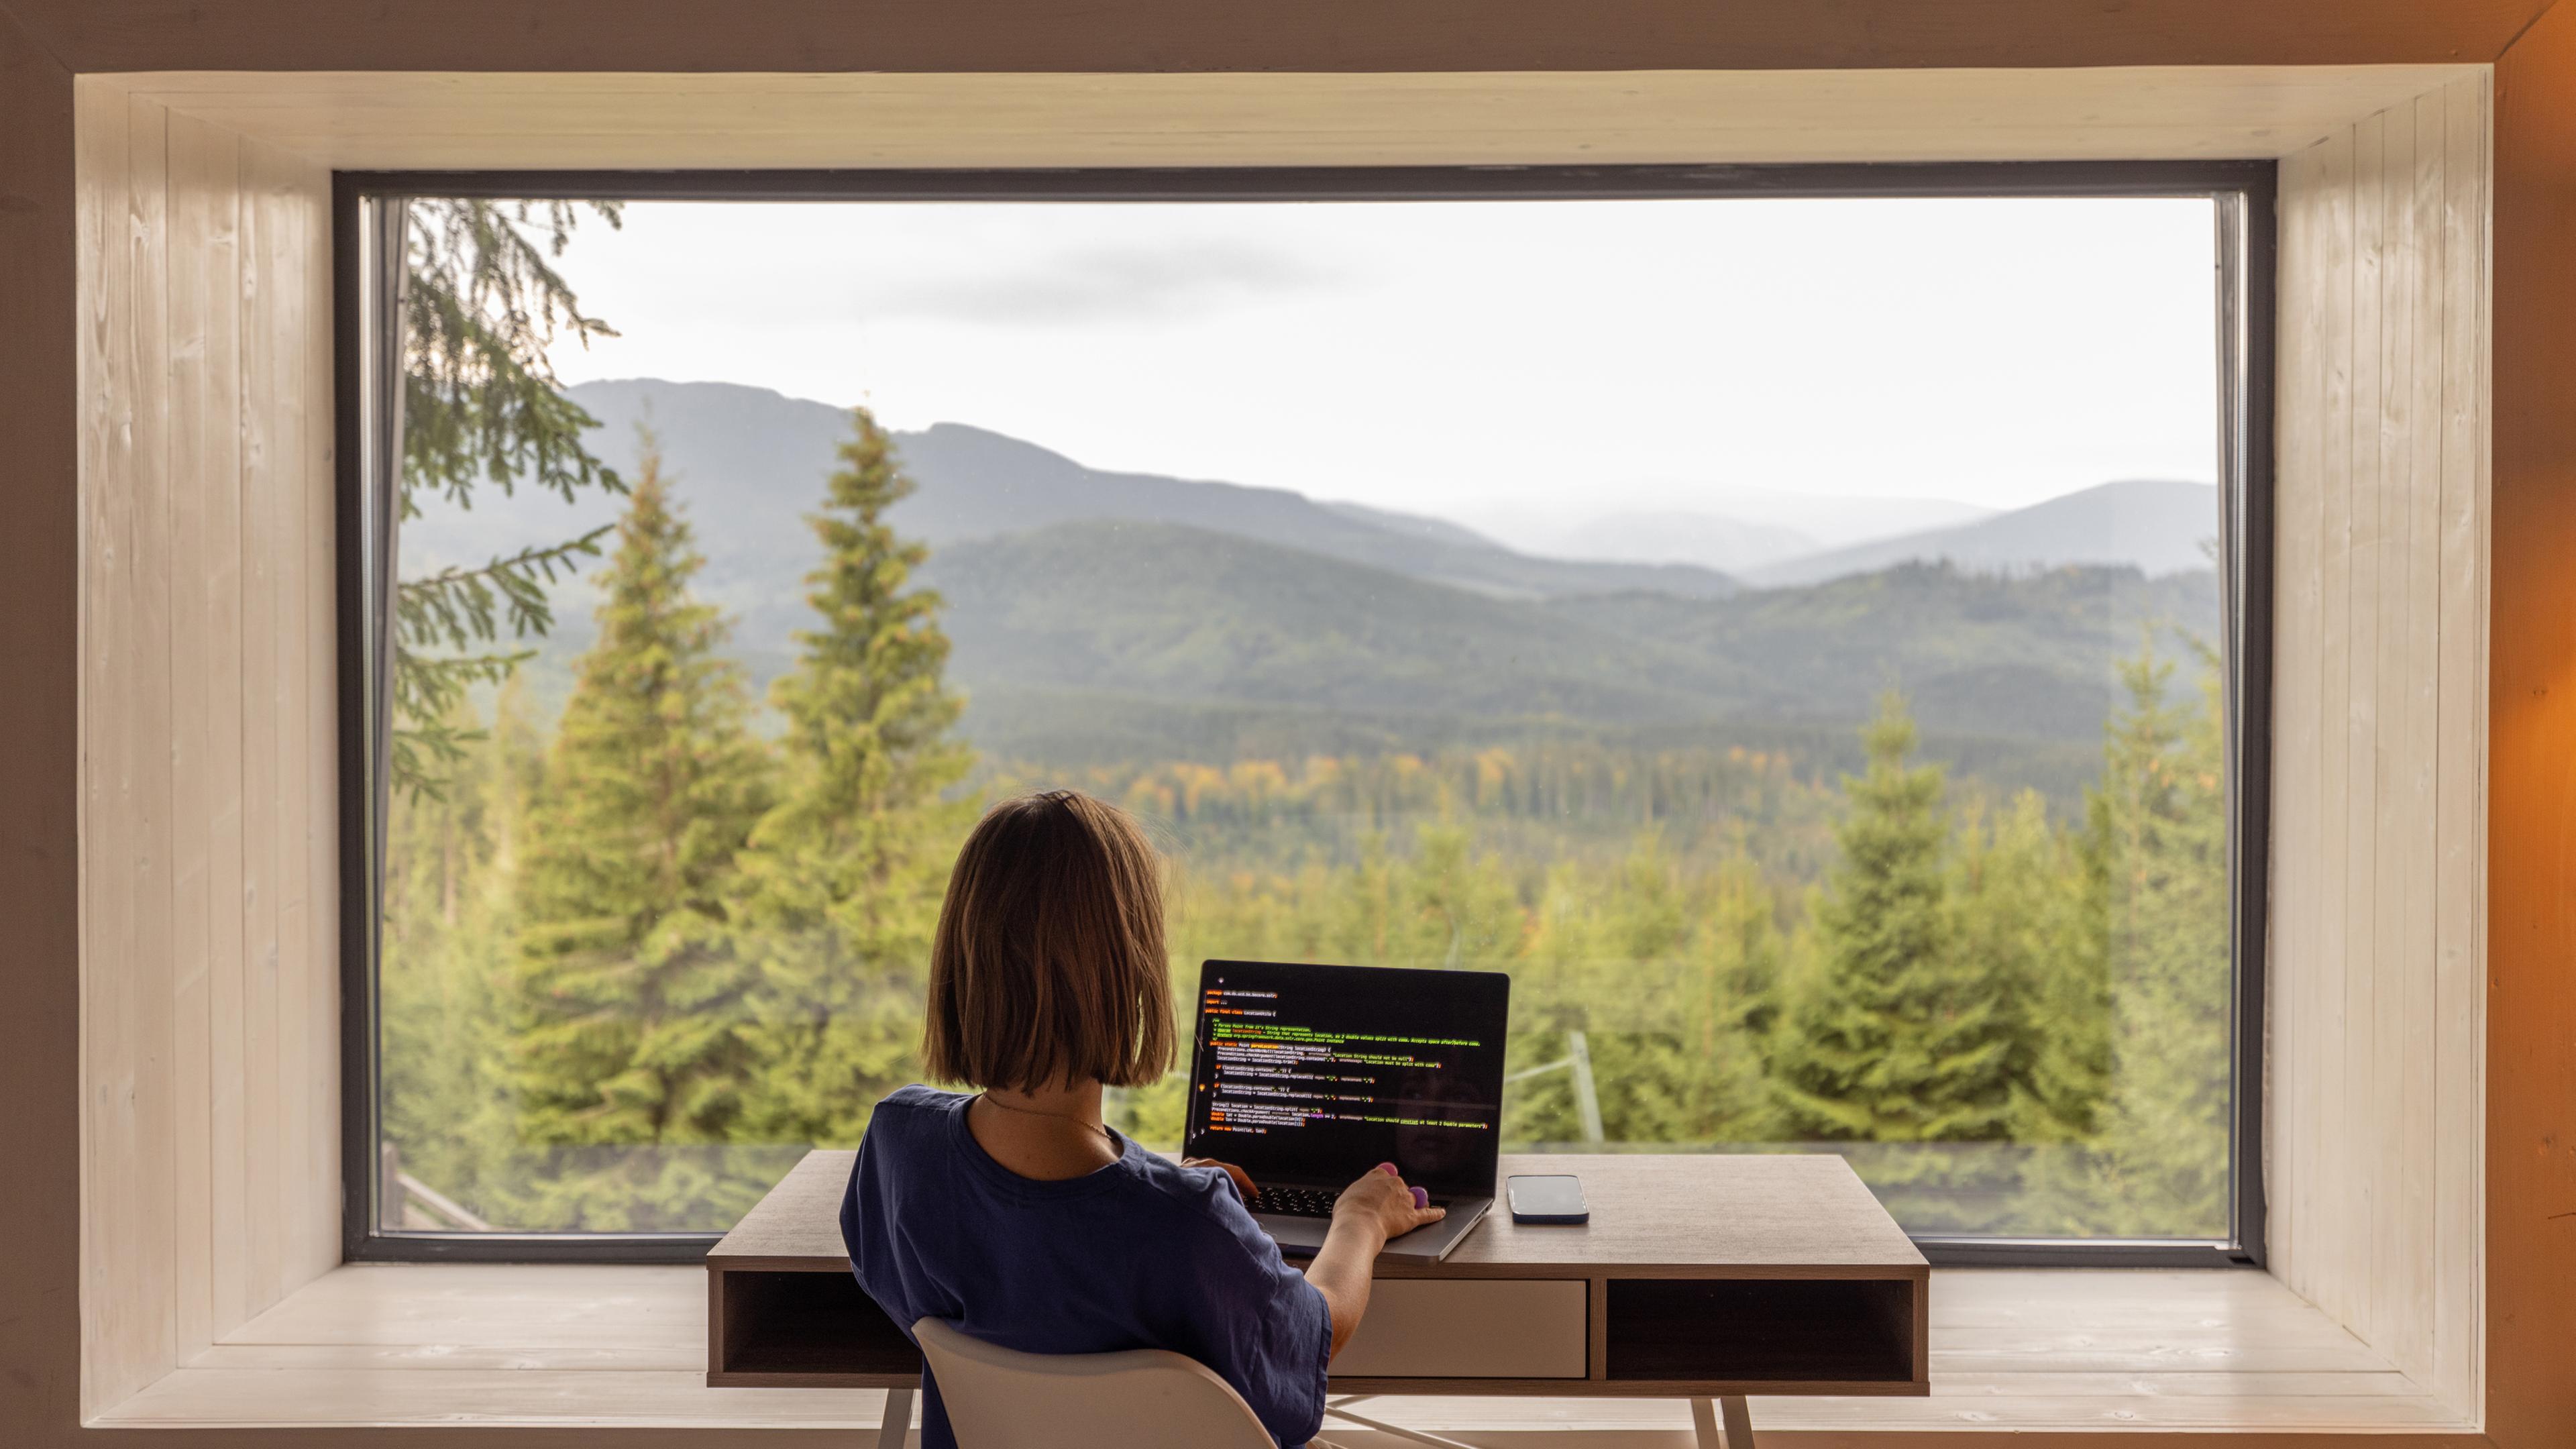 Eien Frau arbeitet an einem Laptop und blickt durch ein großes Fenster in die Natur